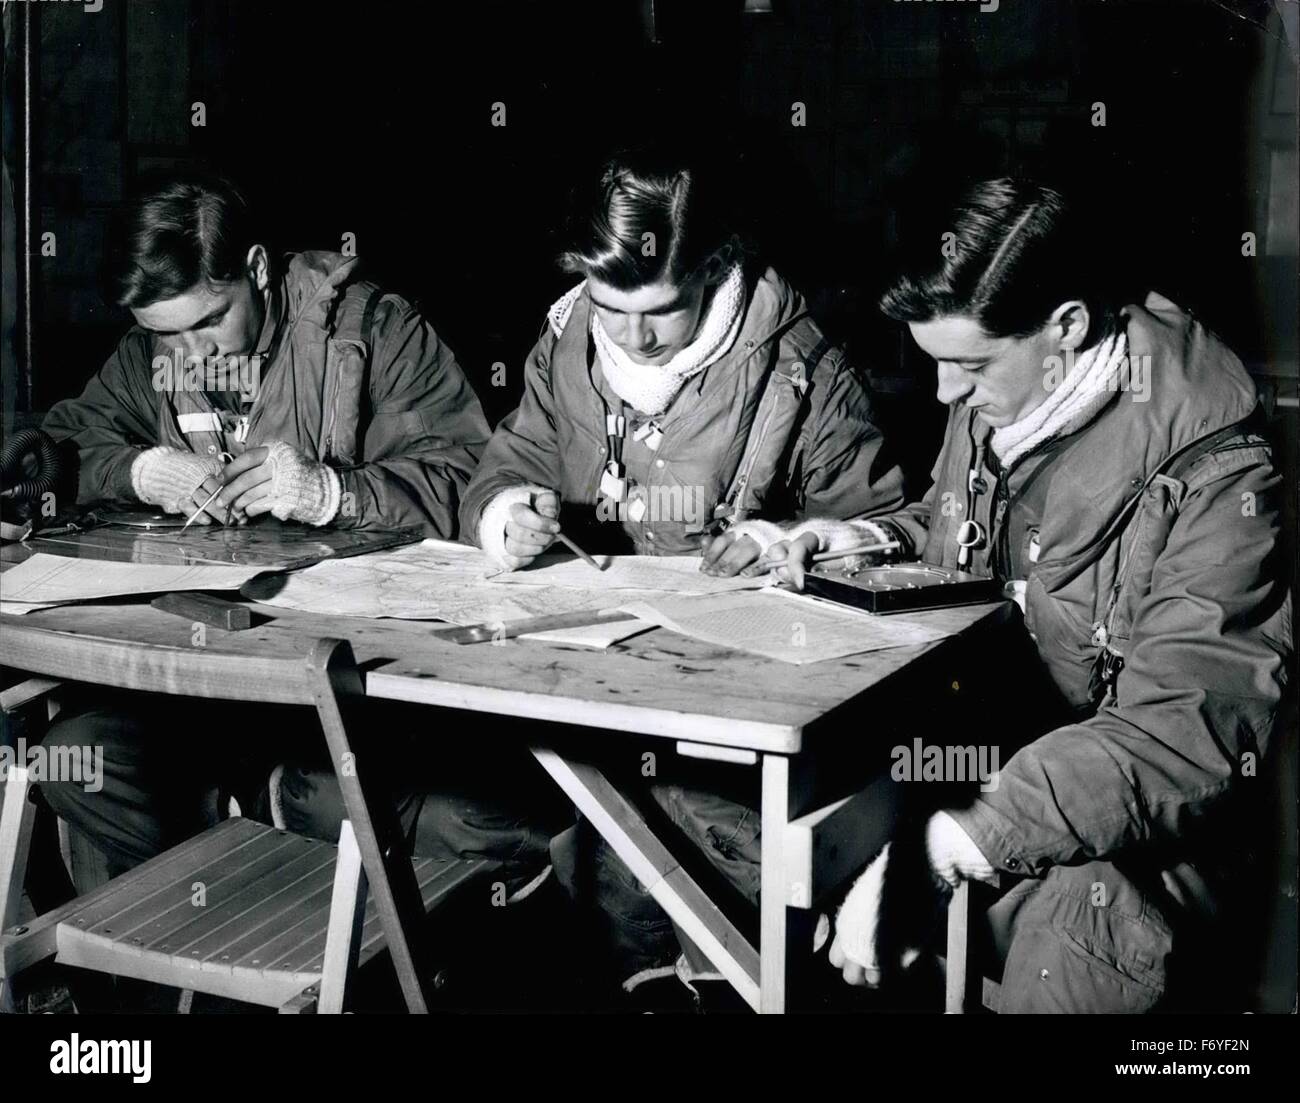 1945 - Formazione Canberra equipaggi prima di prendere un aereo, equipaggi il Canberra effettuare una dettagliata pianificazione di preflight per garantire che il piano può essere oltre il posto giusto all'altezza e tempo. © Keystone Pictures USA/ZUMAPRESS.com/Alamy Live News Foto Stock